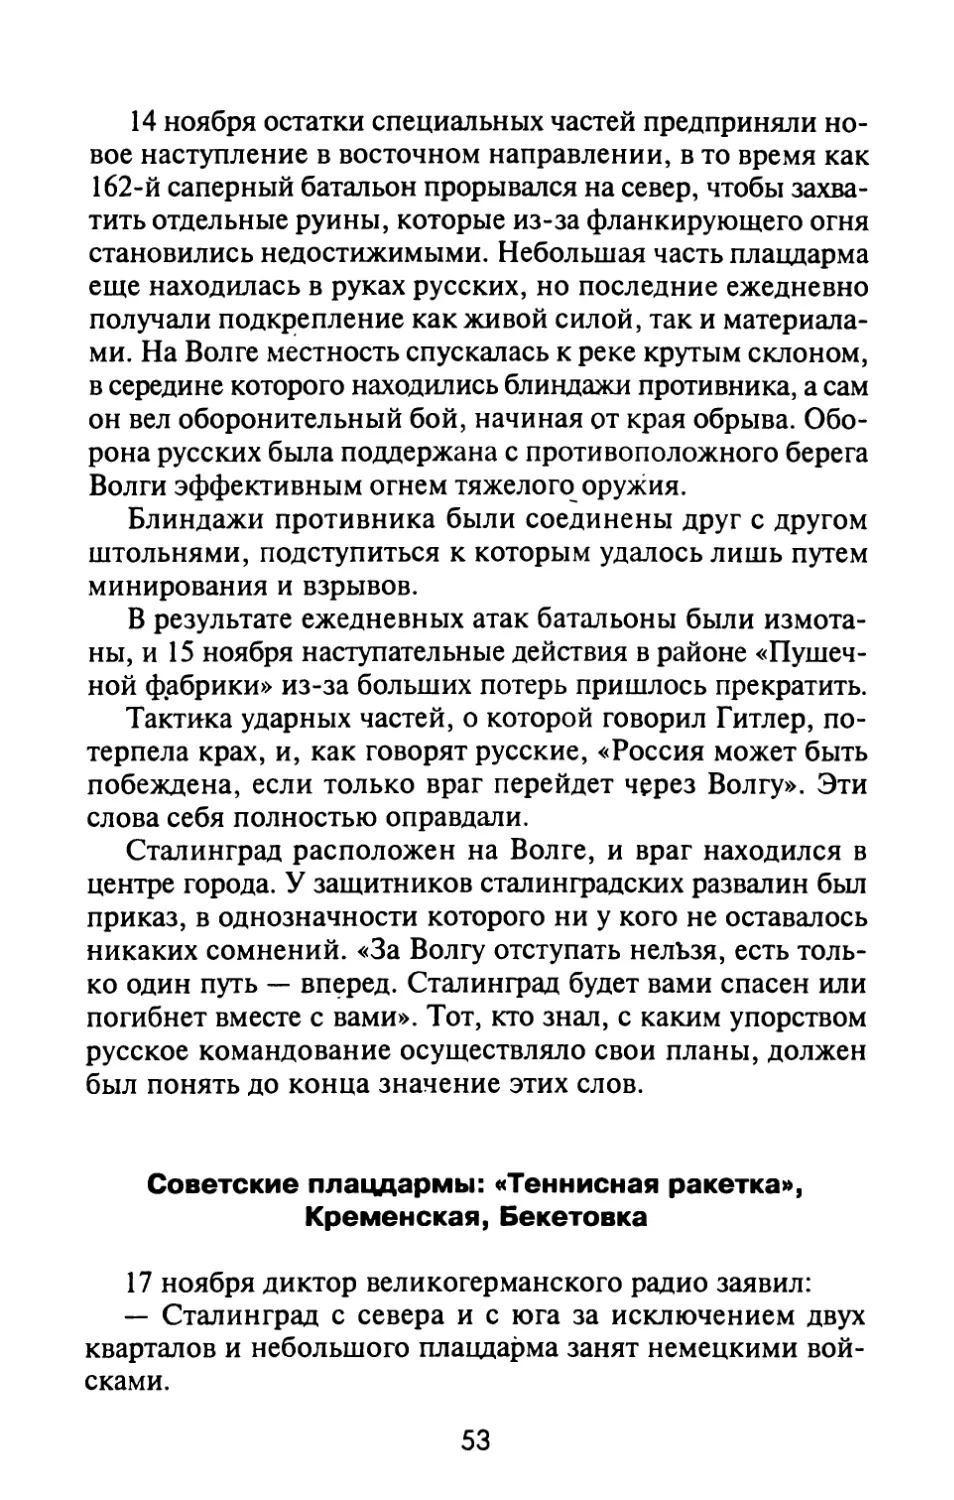 Советские плацдармы: «Теннисная ракетка», Кременская, Бекетовка